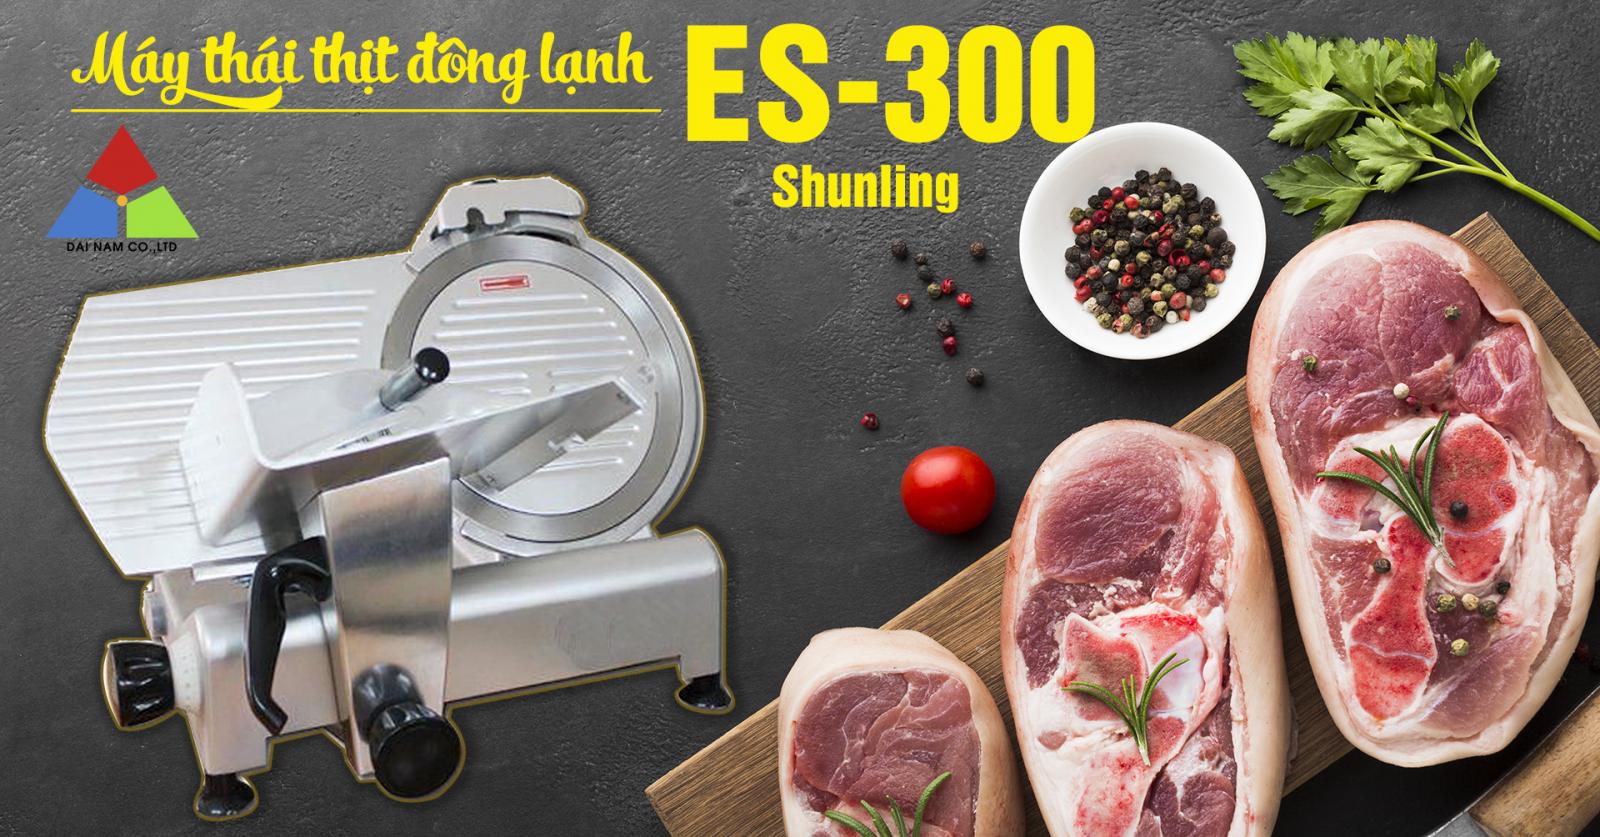 cung cấp máy thái thịt bò úc es300